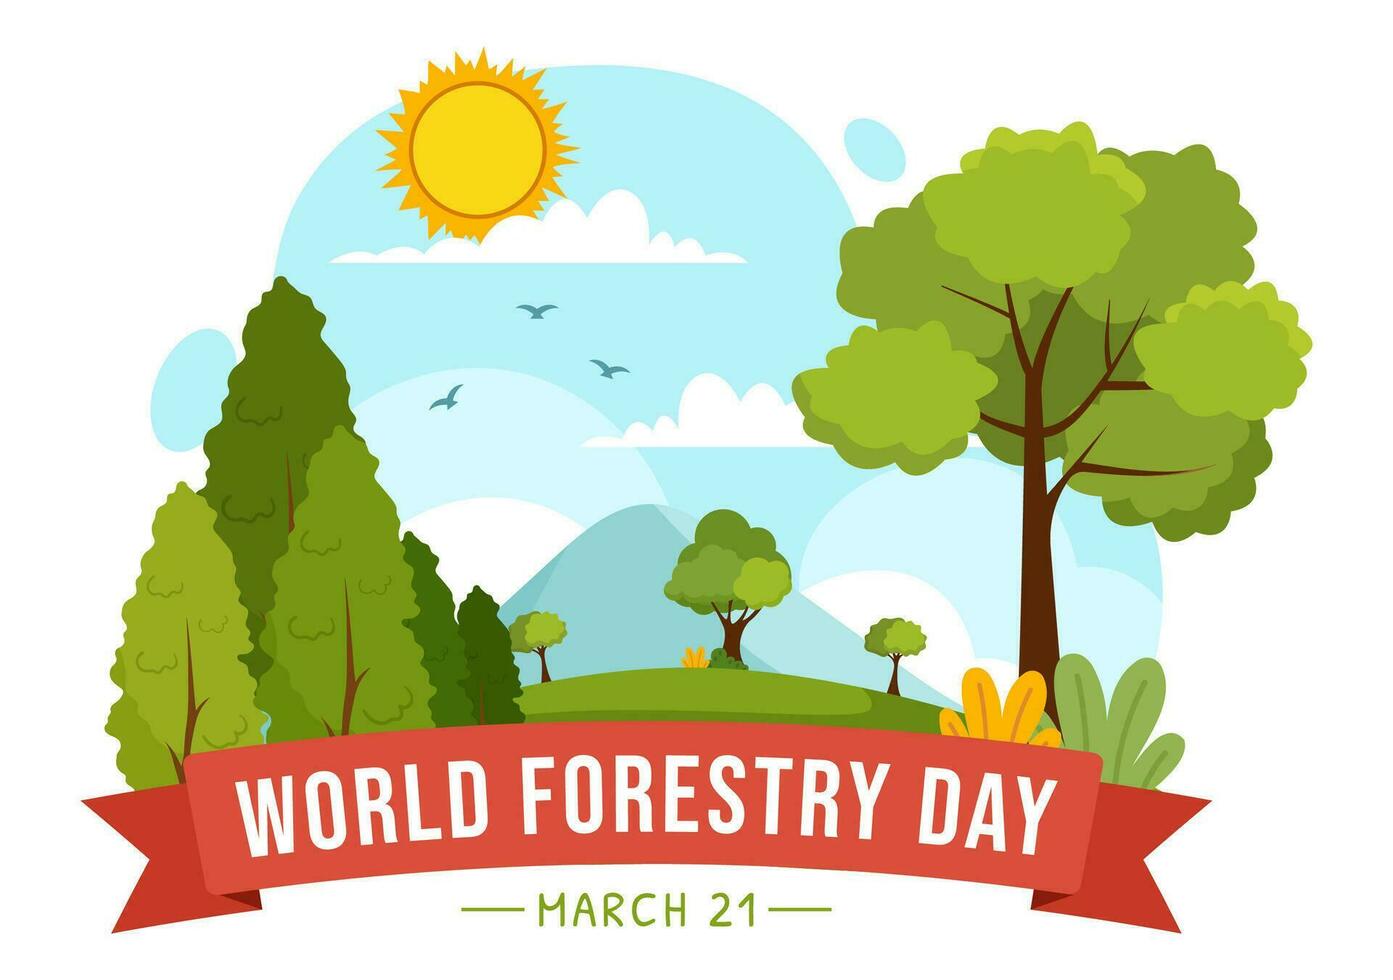 International Wald Tag Vektor Illustration auf 21 März mit Pflanzen, Bäume, Grün Felder und verschiedene Tierwelt zu wirtschaftlich Forstwirtschaft im Hintergrund